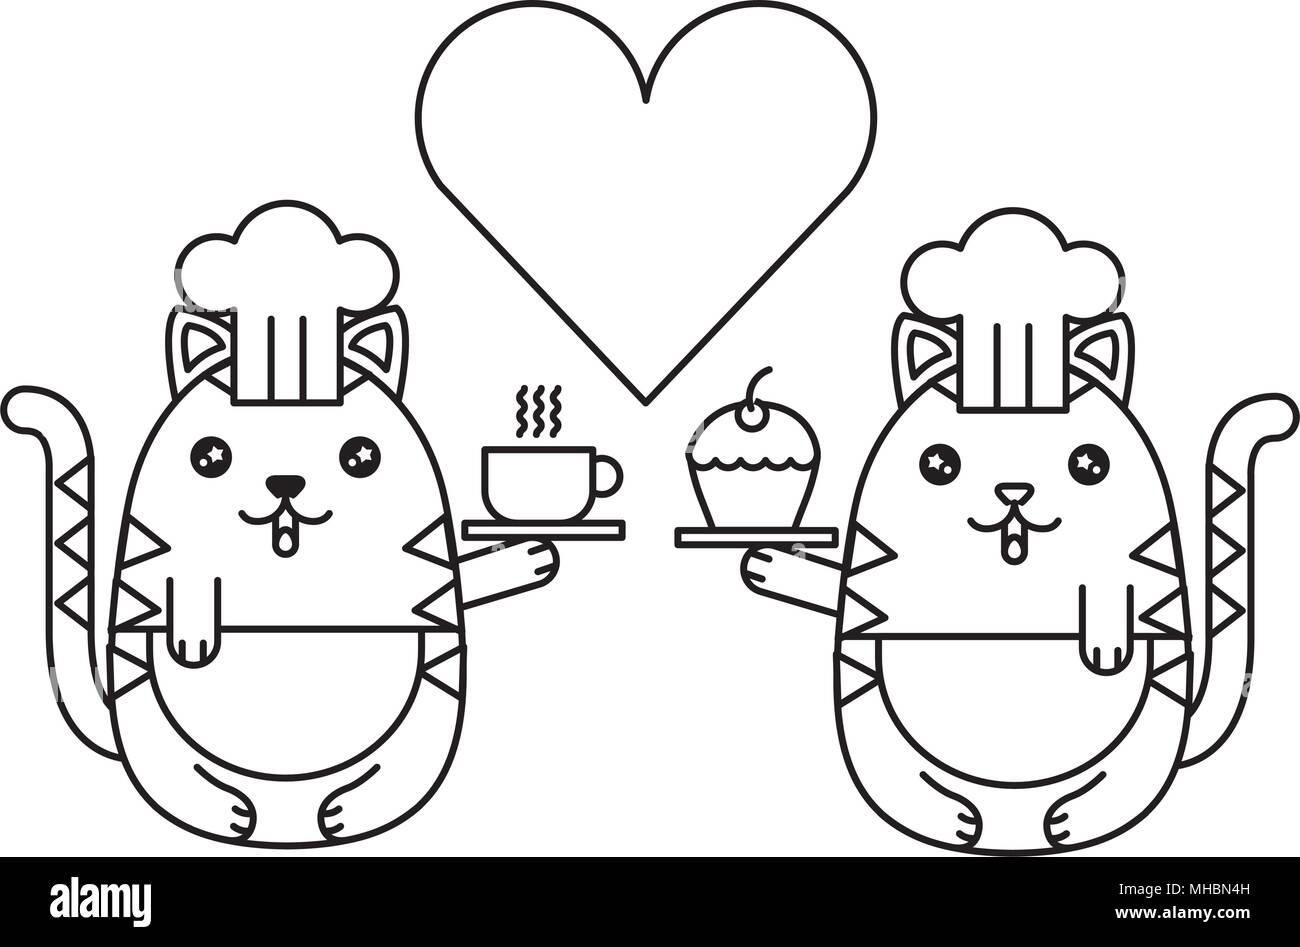 Couple cute cats chefs avec coeur kawaii character vector illustration design Illustration de Vecteur